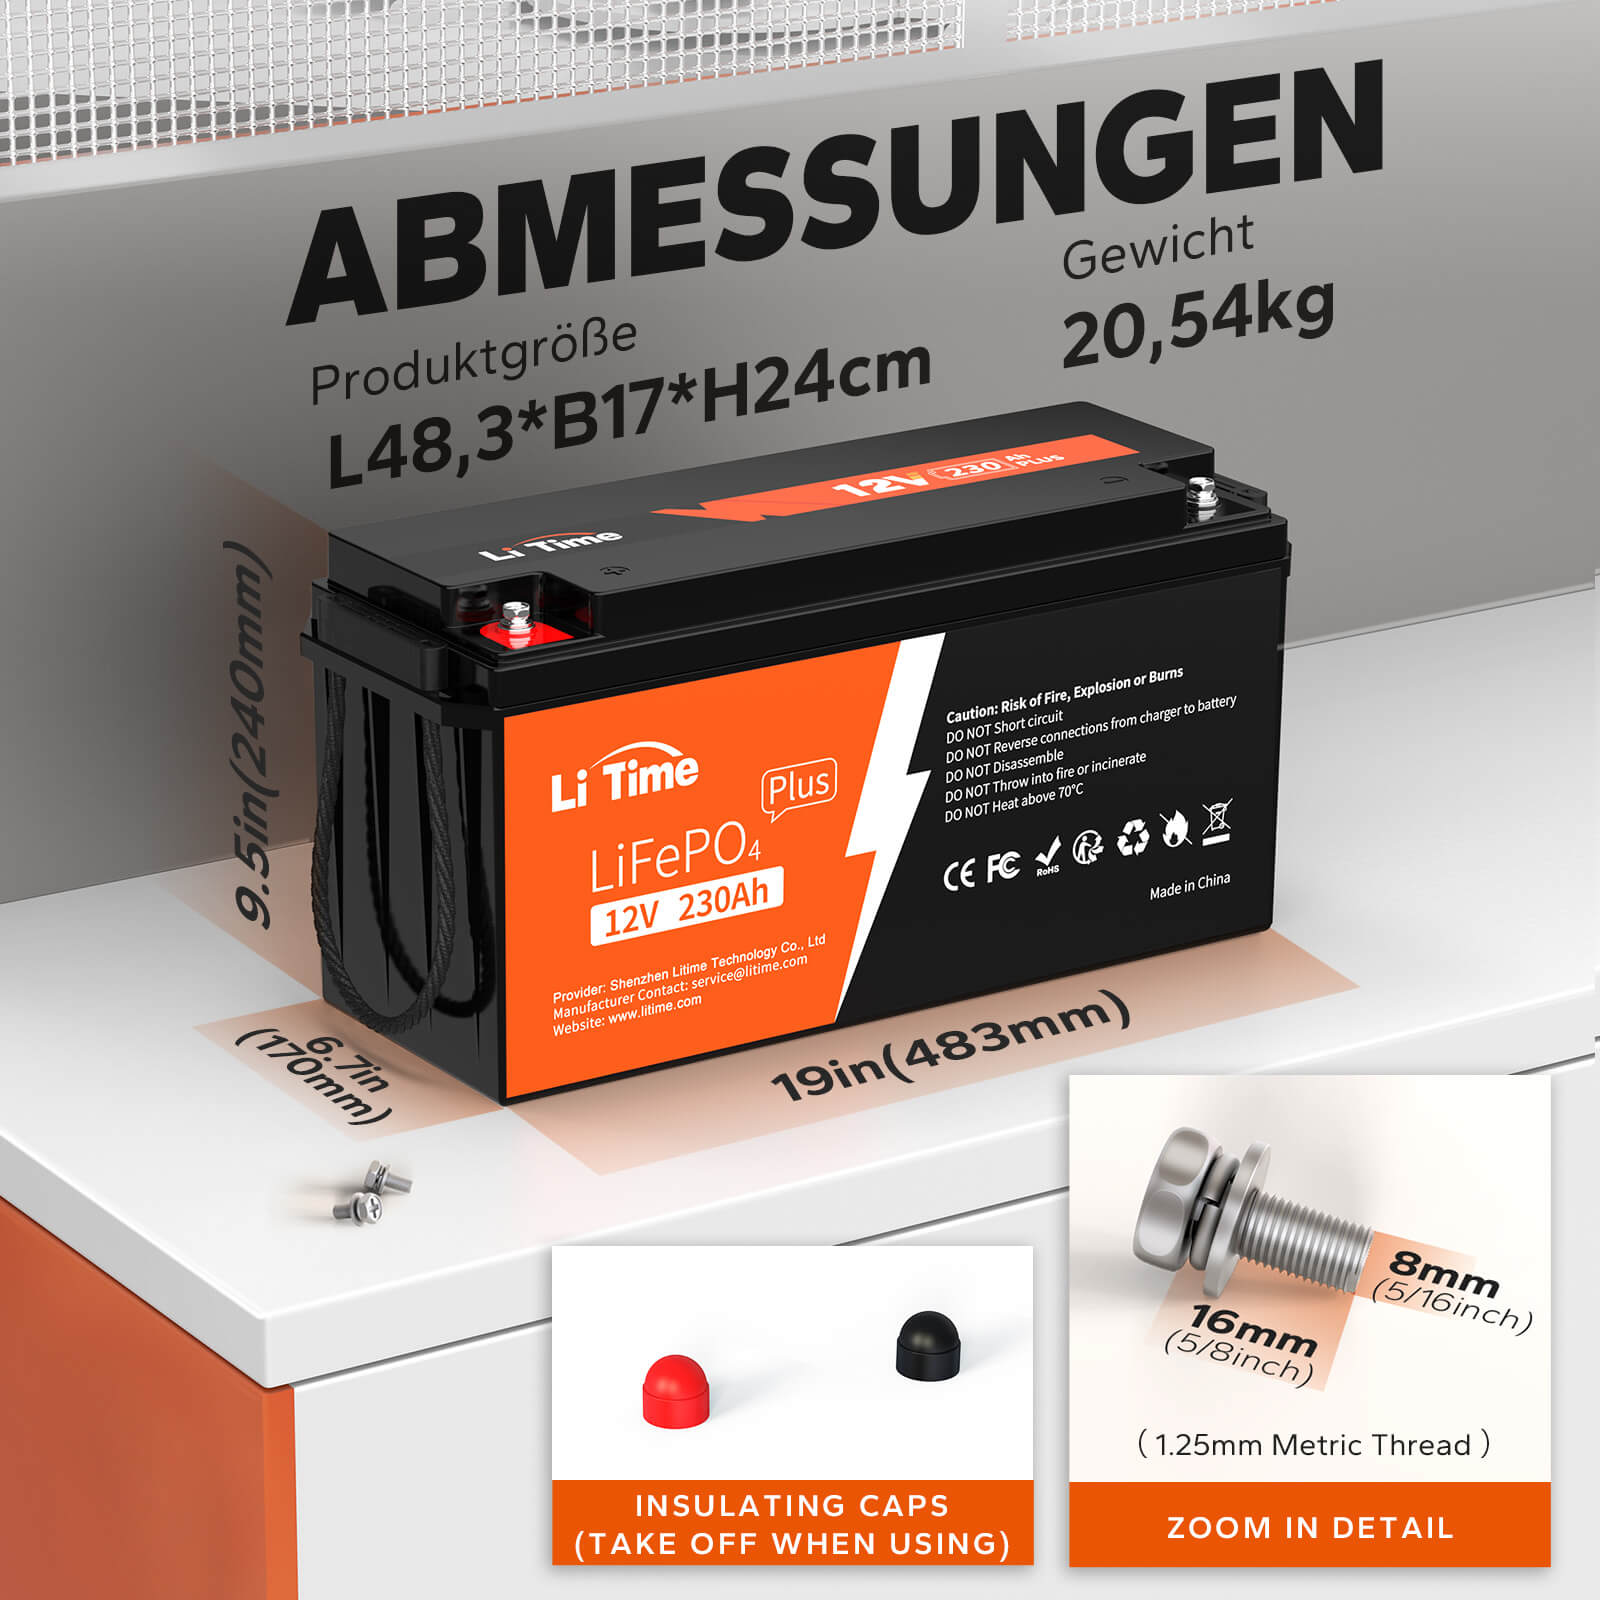 LiTime 12V 230Ah Plus Low-Temp-Schutz LiFePO4 Batterie Eingebautes 200A BMS, Max 2944Wh Energie